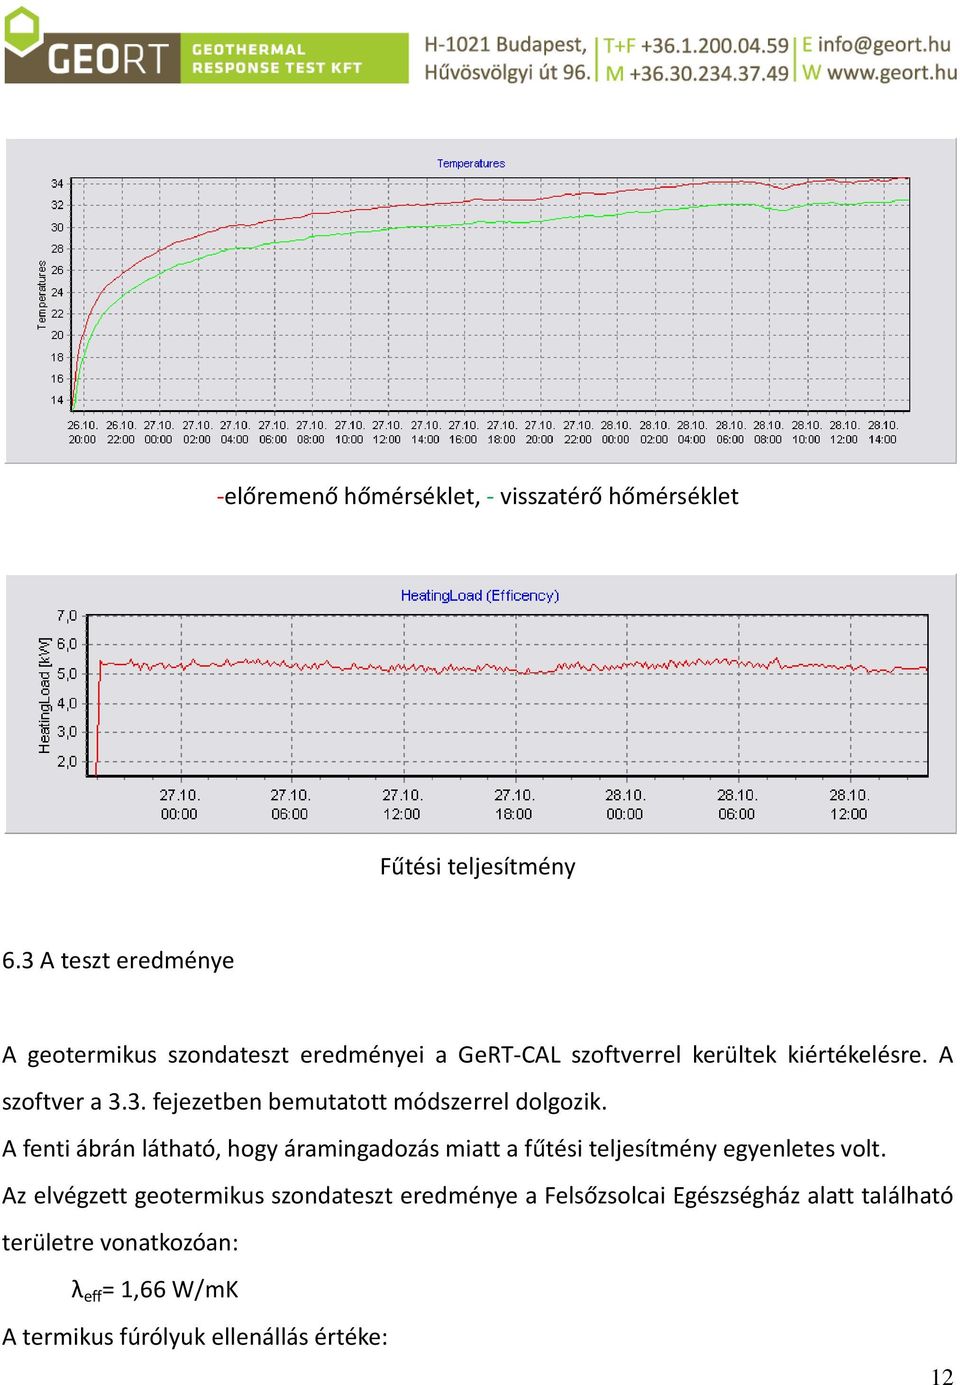 A fenti ábrán látható, hogy áramingadozás miatt a fűtési teljesítmény egyenletes volt.